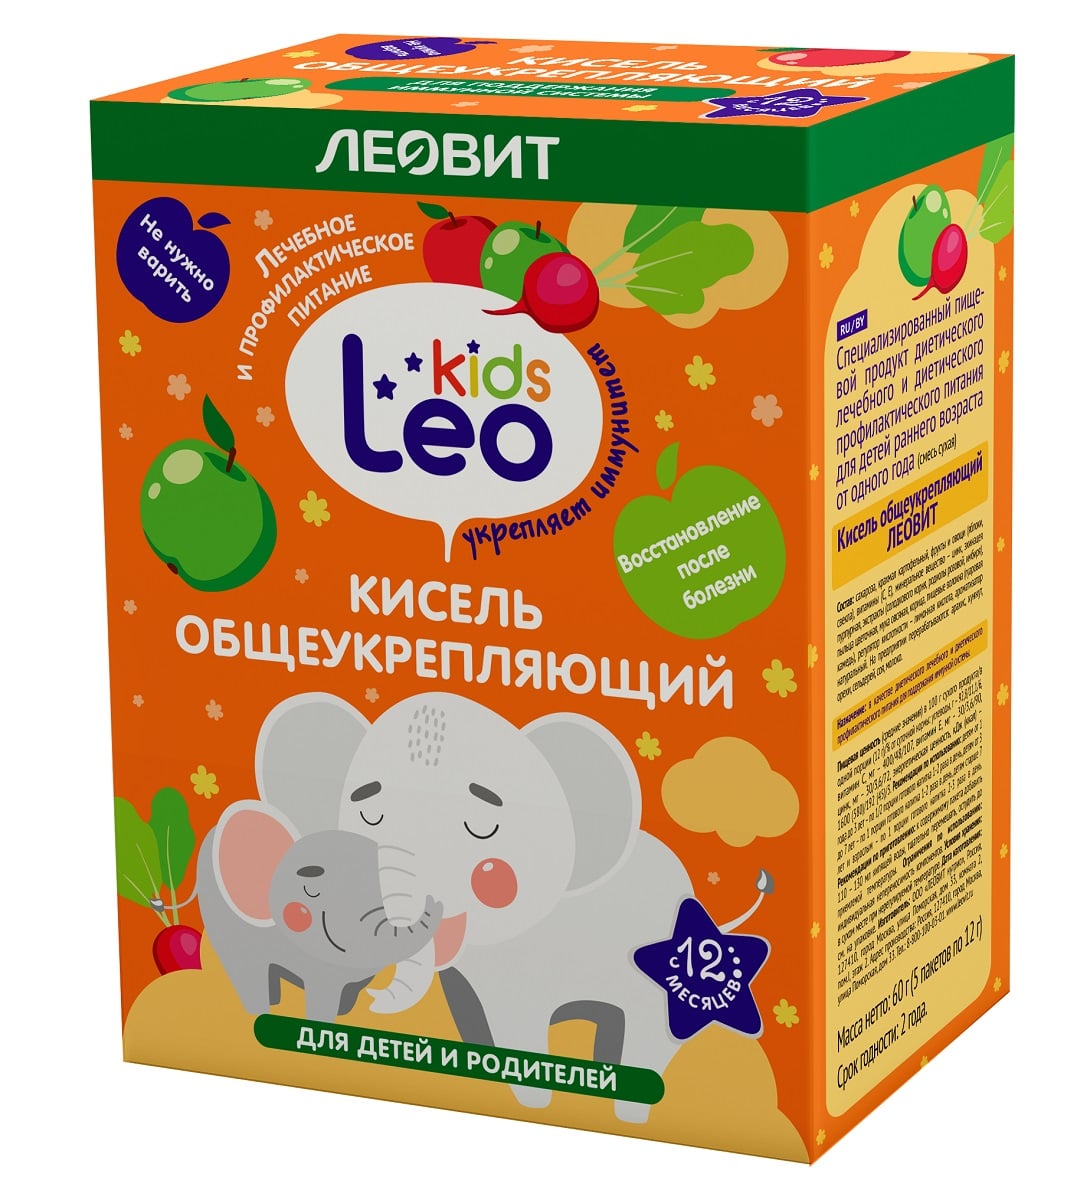 Леовит Кисель общеукрепляющий для детей, 5 пакетов х 12 г (Леовит, Leo Kids) фото 0